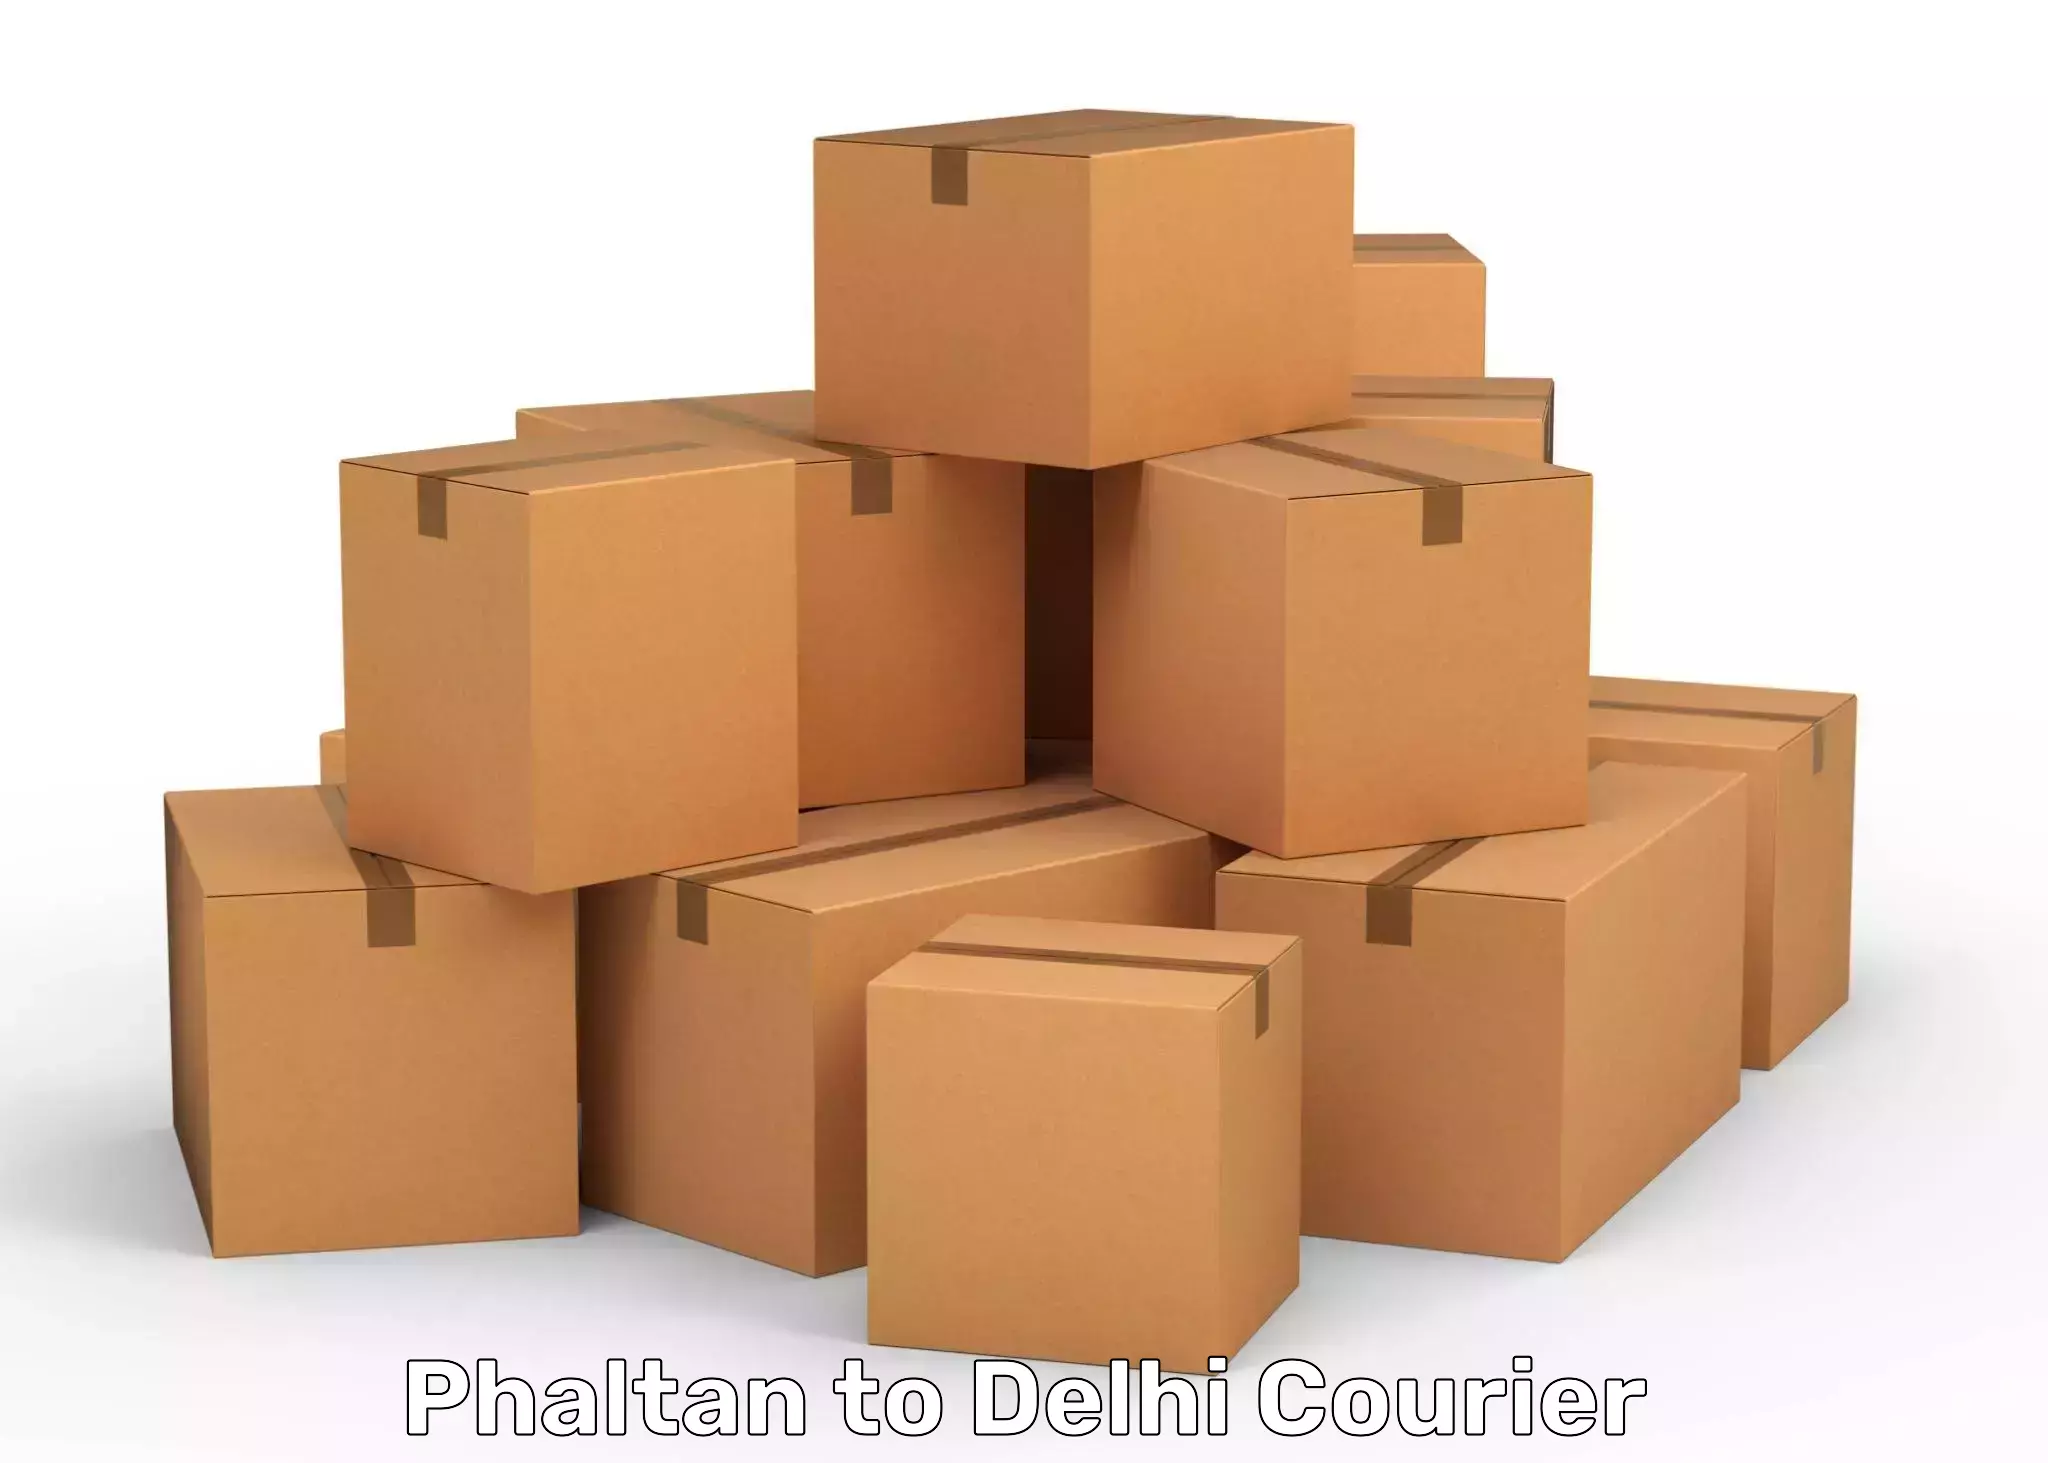 High-capacity parcel service Phaltan to Kalkaji